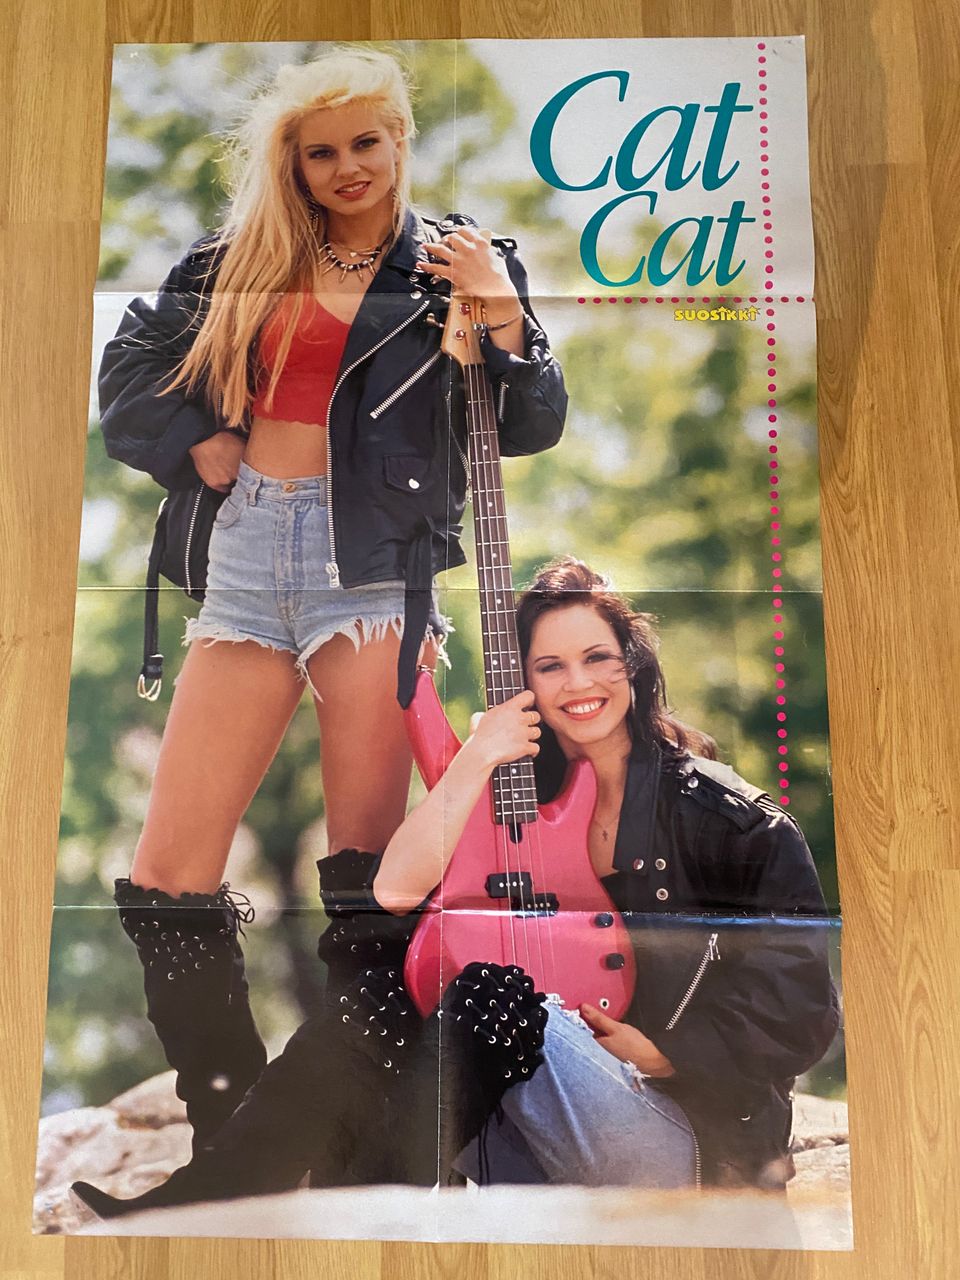 CatCat ja Madonna julisteet